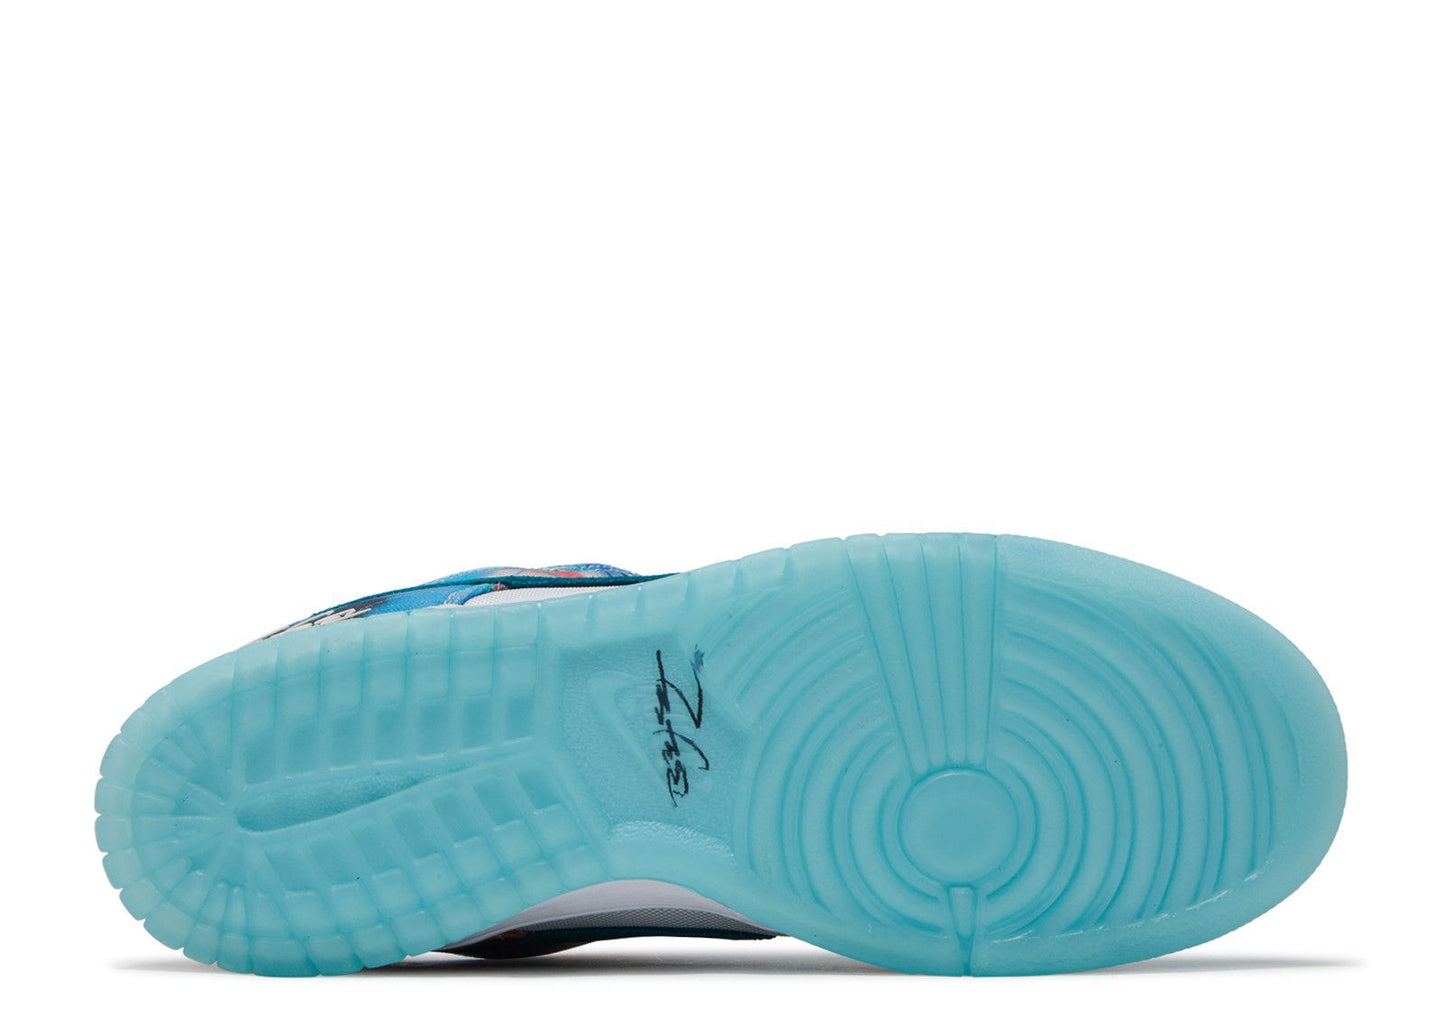 Futura Laboratories x Nike SB Dunk Low "Bleached Aqua"